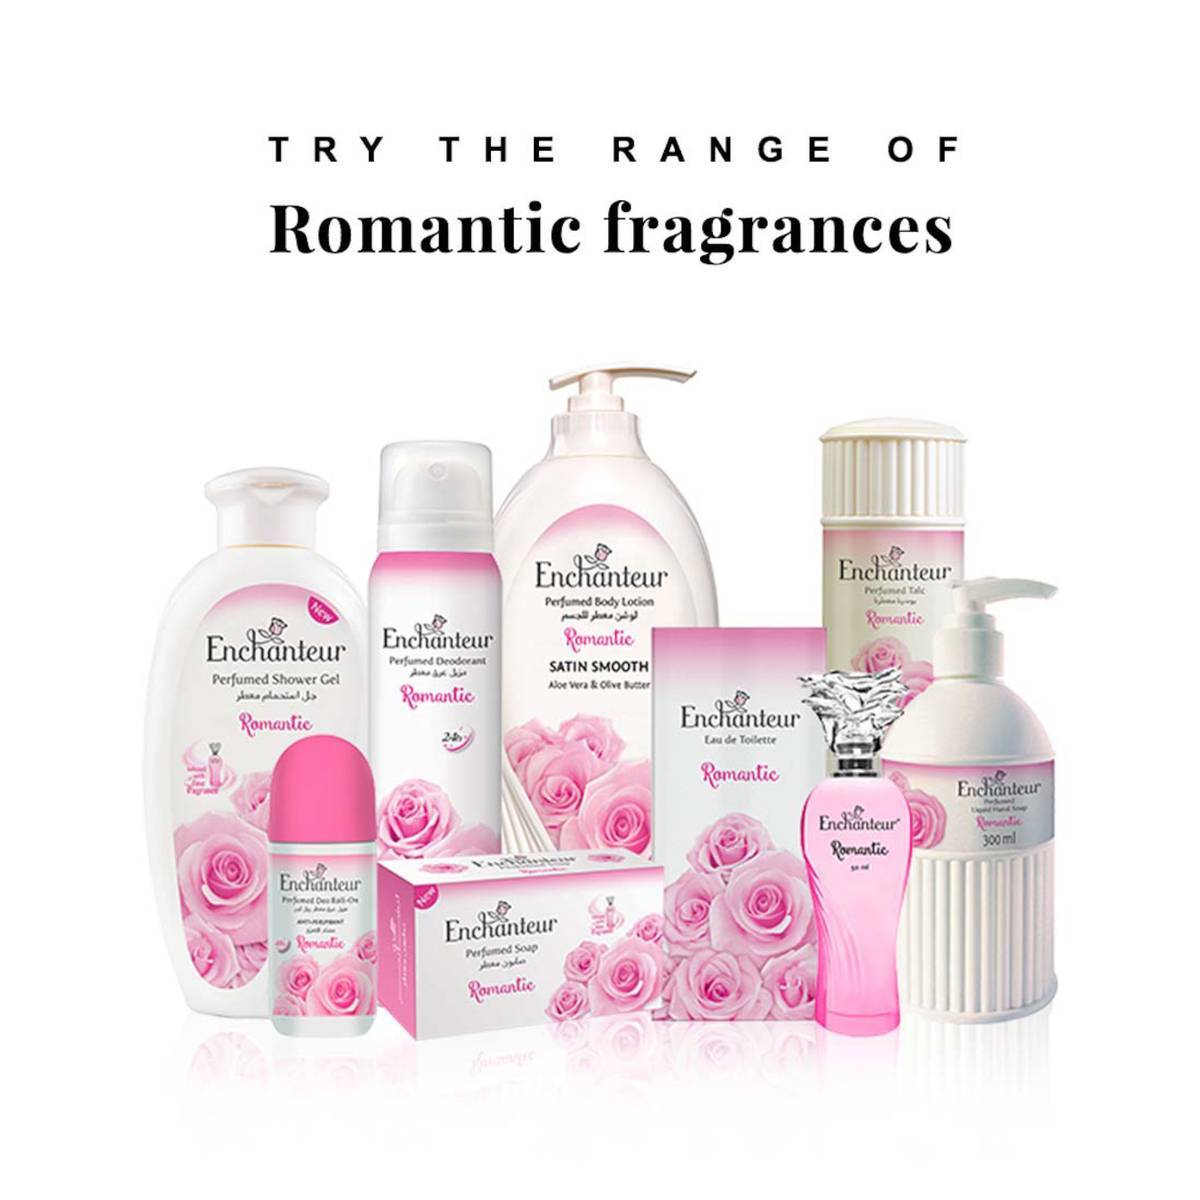 Enchanteur Romantic EDT Perfume for Women 100 ml